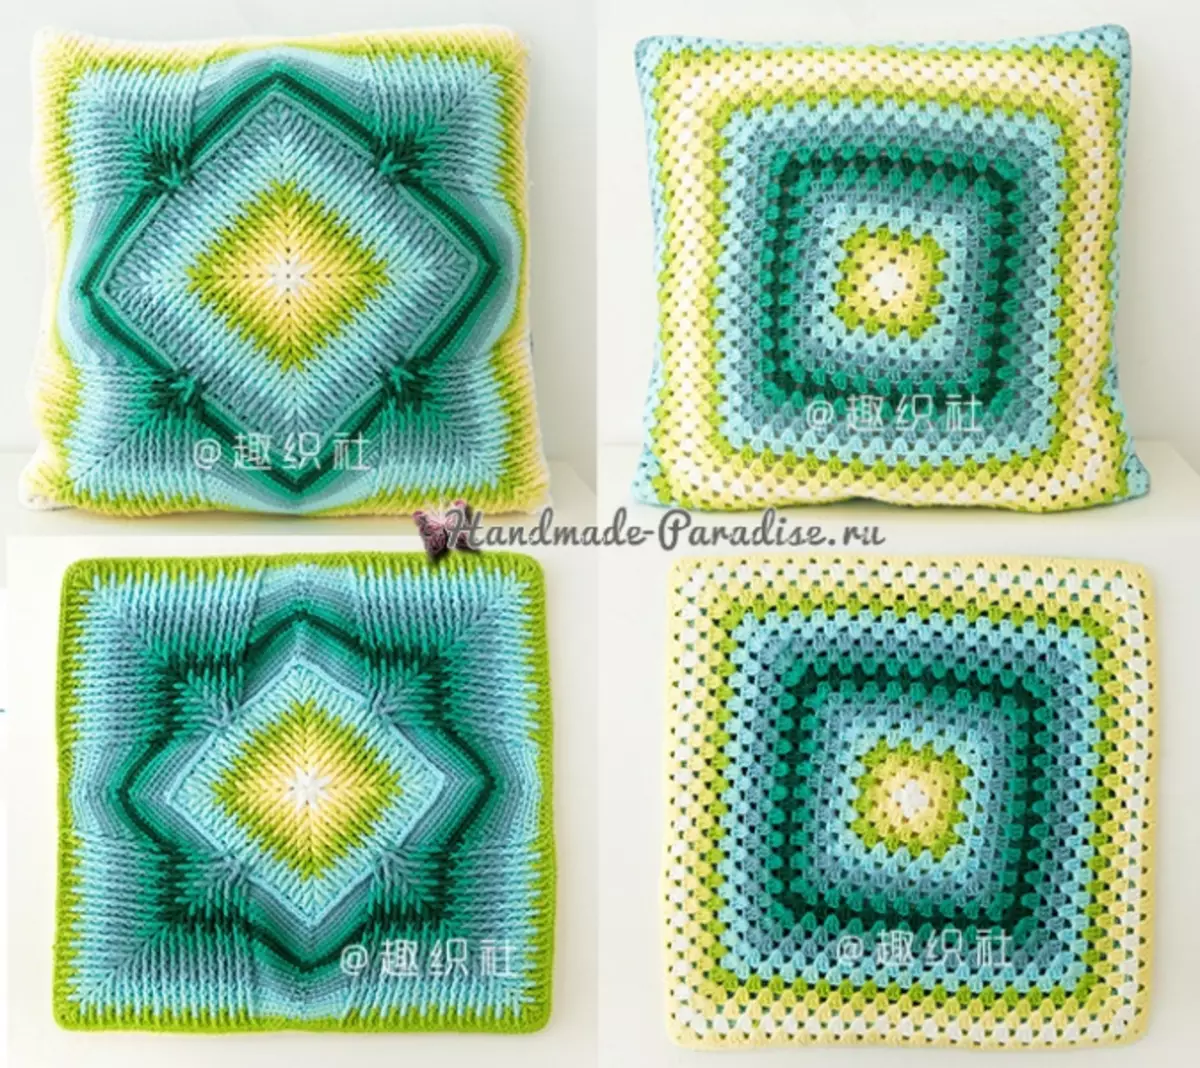 Bantal Crochet dengan efek gradien